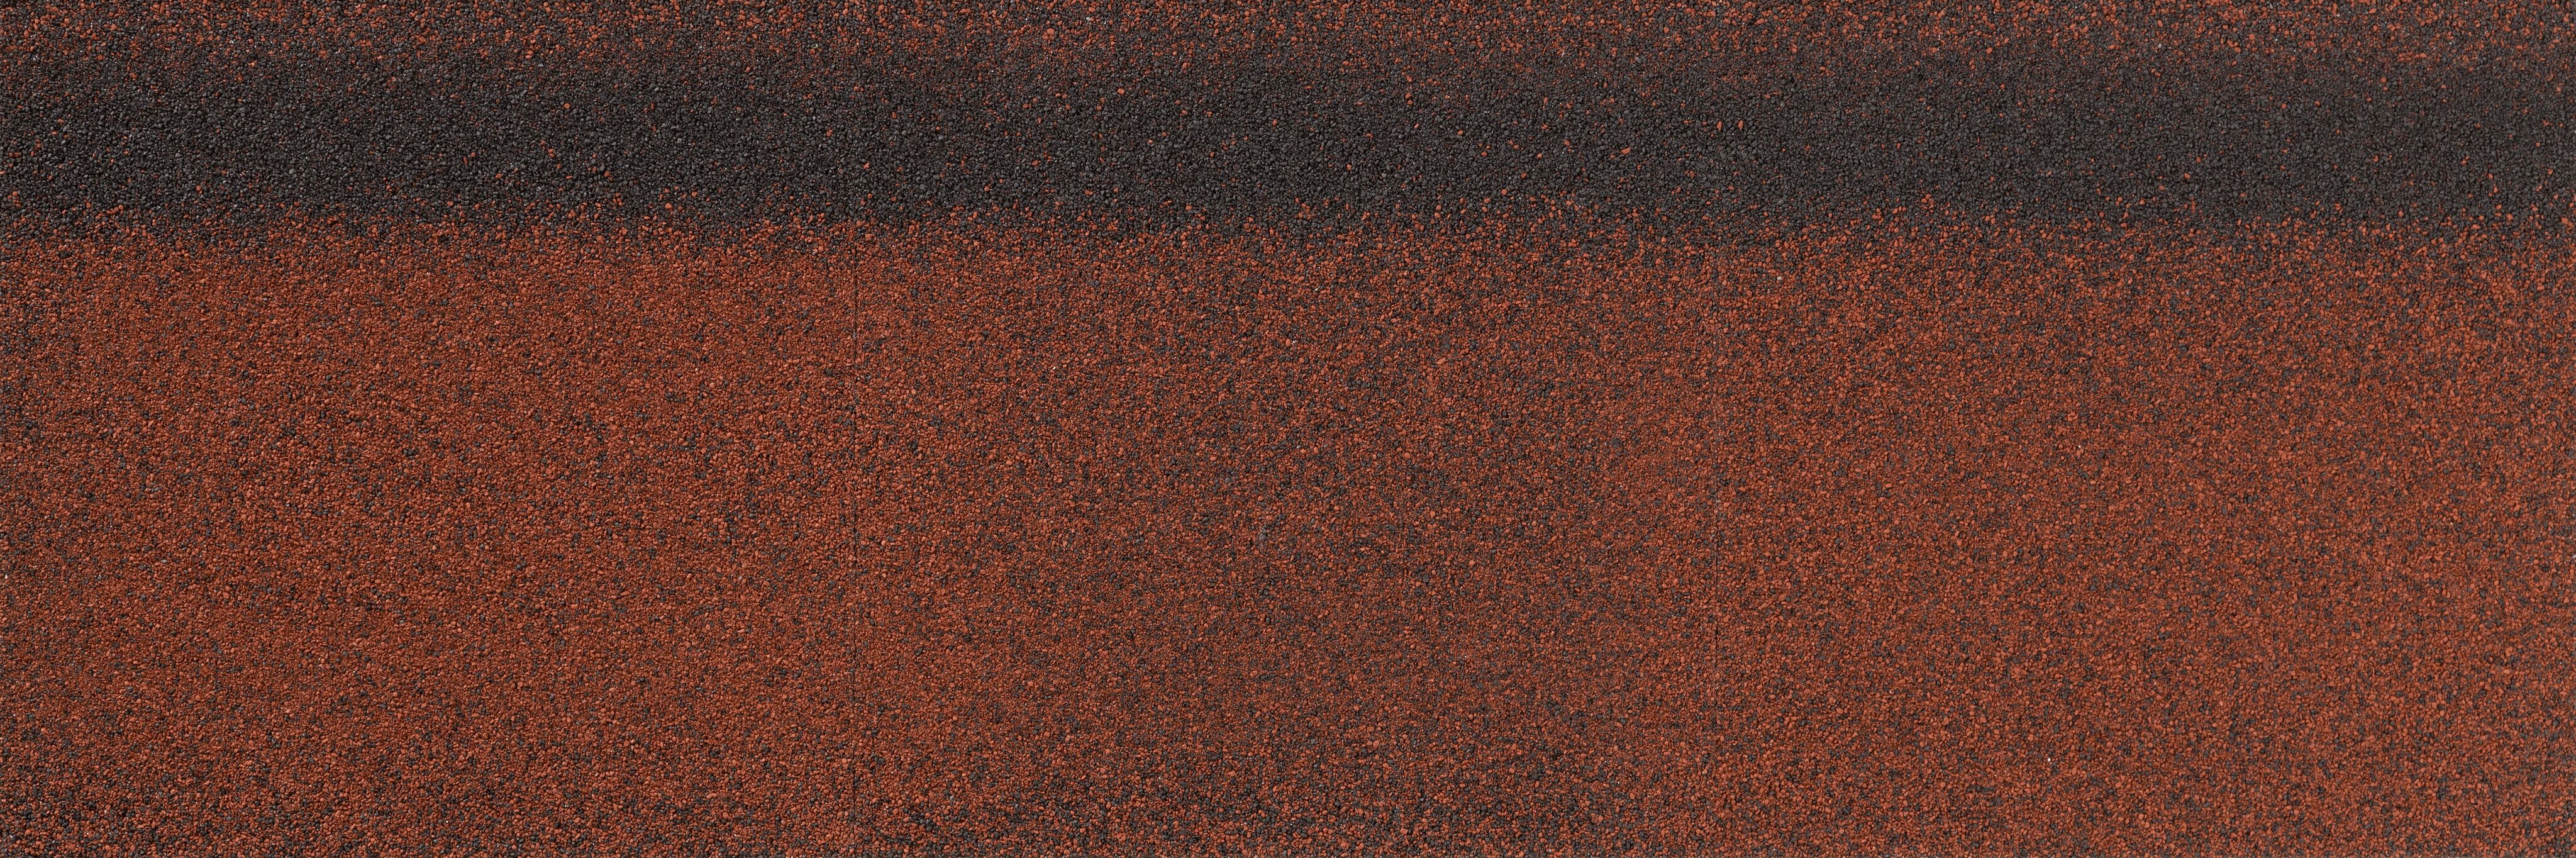 Конек-карниз Quiet tile Brick 16.8/20м.п, бисмарк